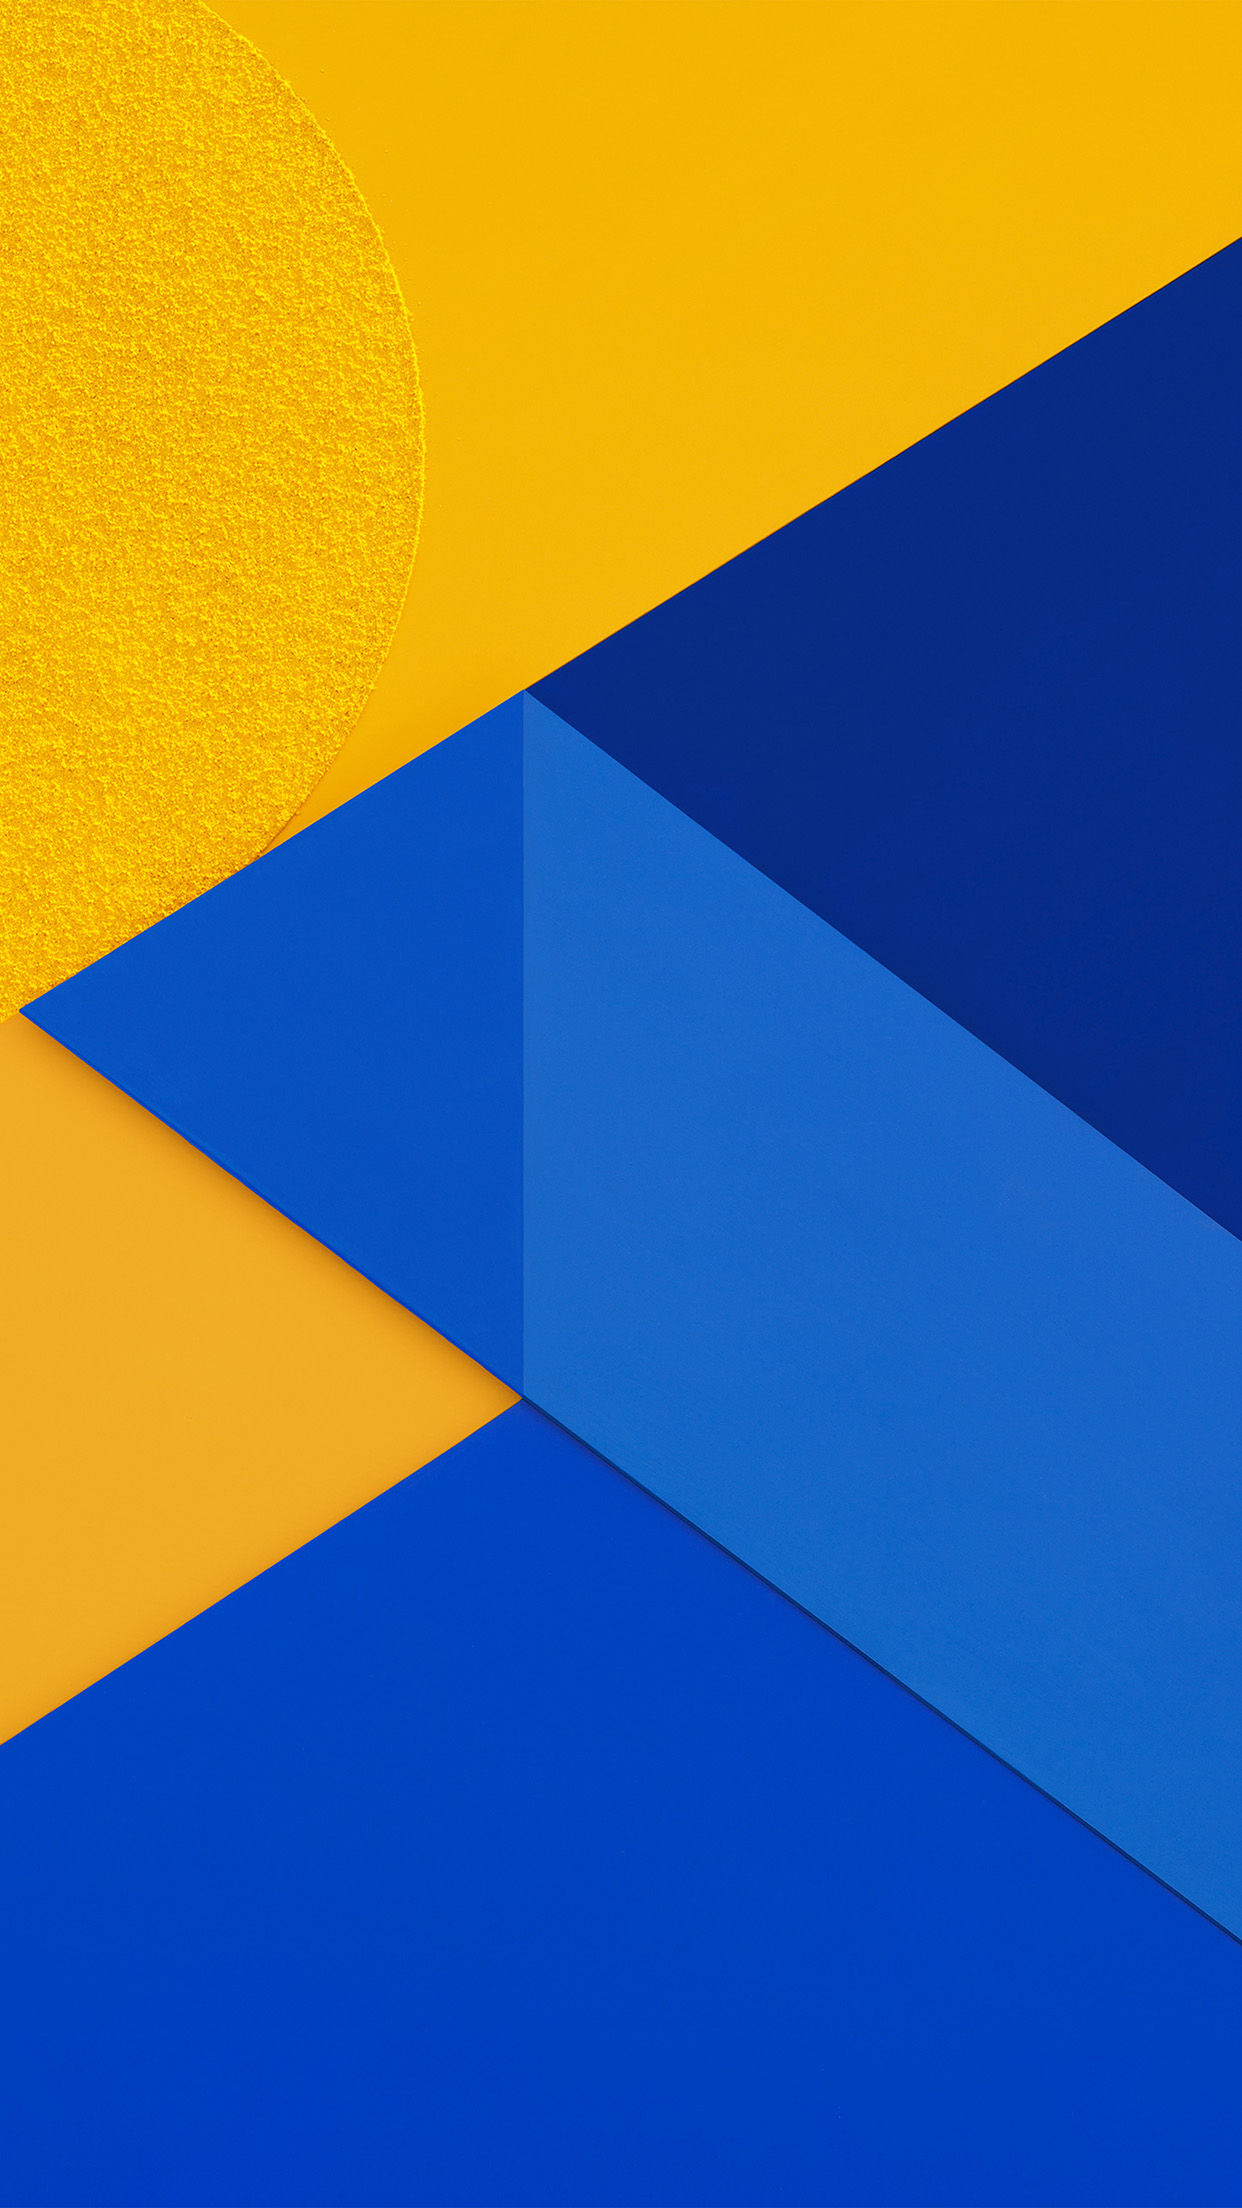 papel pintado azul y amarillo,azul,azul cobalto,naranja,amarillo,azul eléctrico